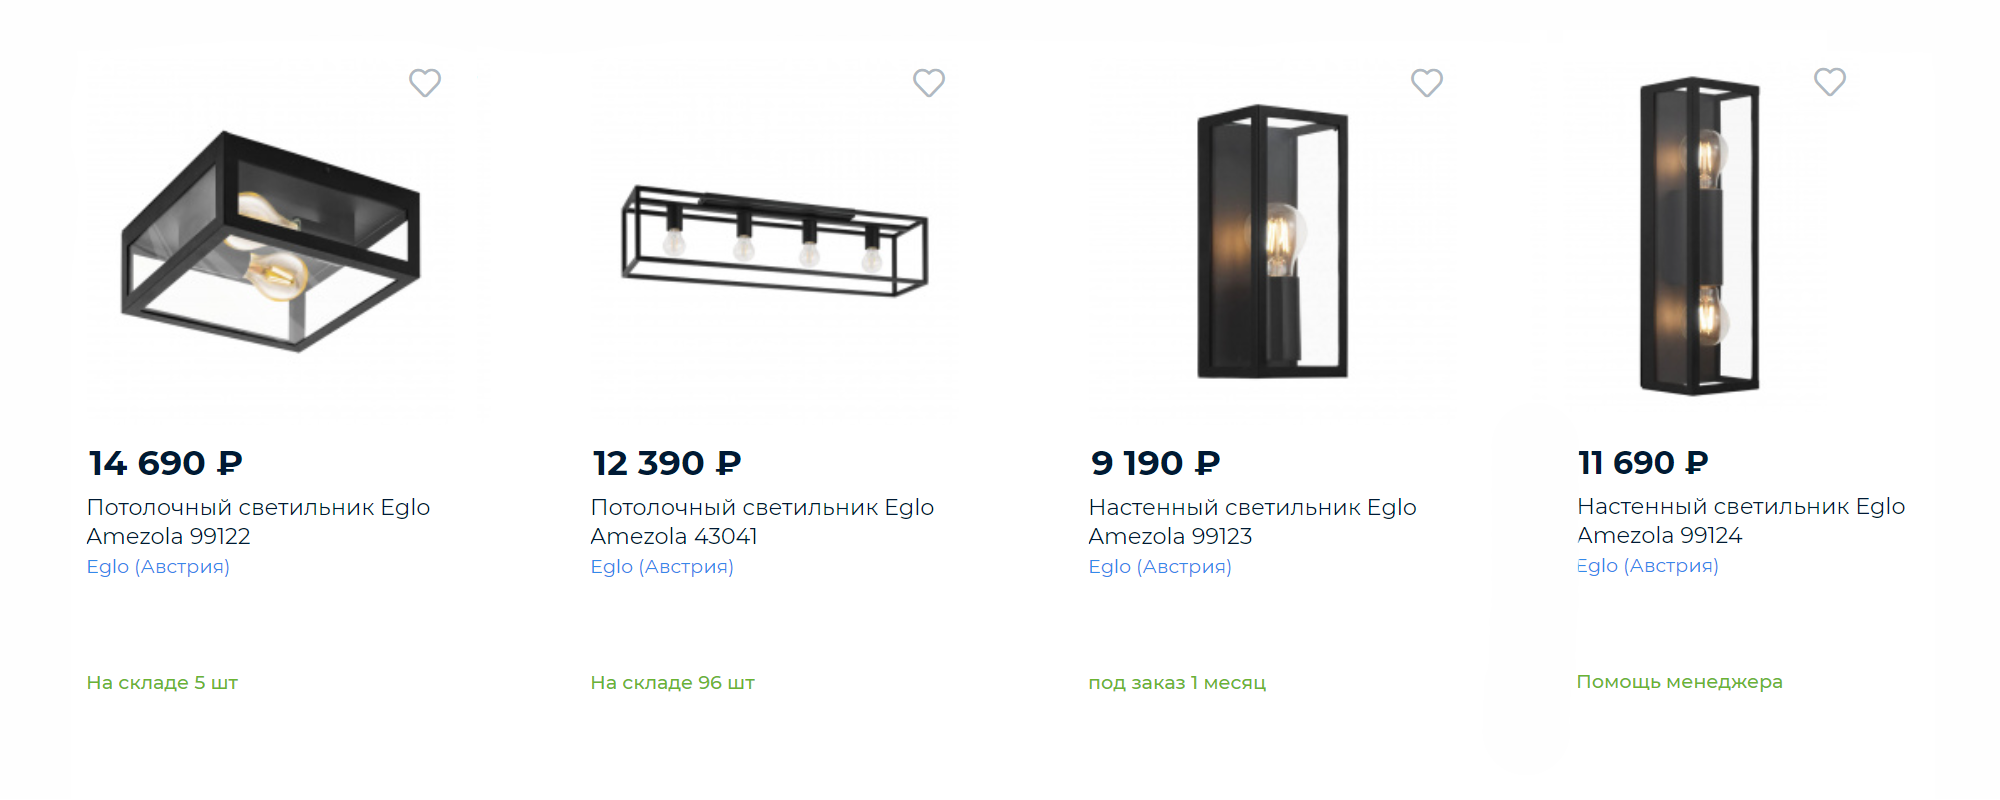 Цены на разные варианты светильников. Наш выбор пал на последние два. Источник: «Вам свет»